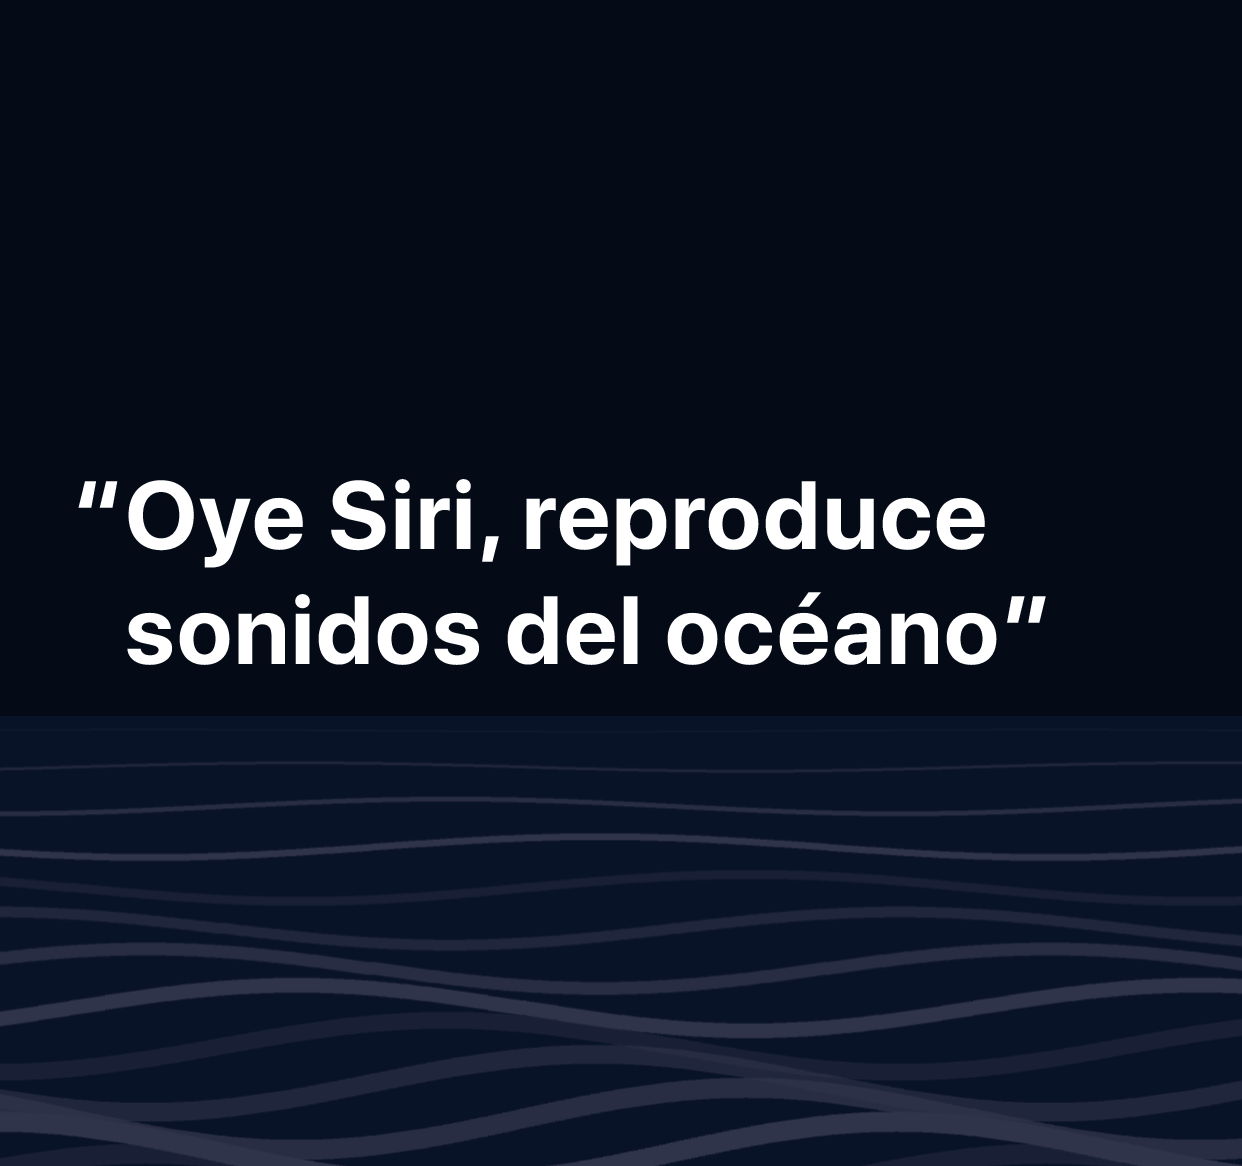 Ilustración con la frase “Oye Siri, pon sonidos del mar”.